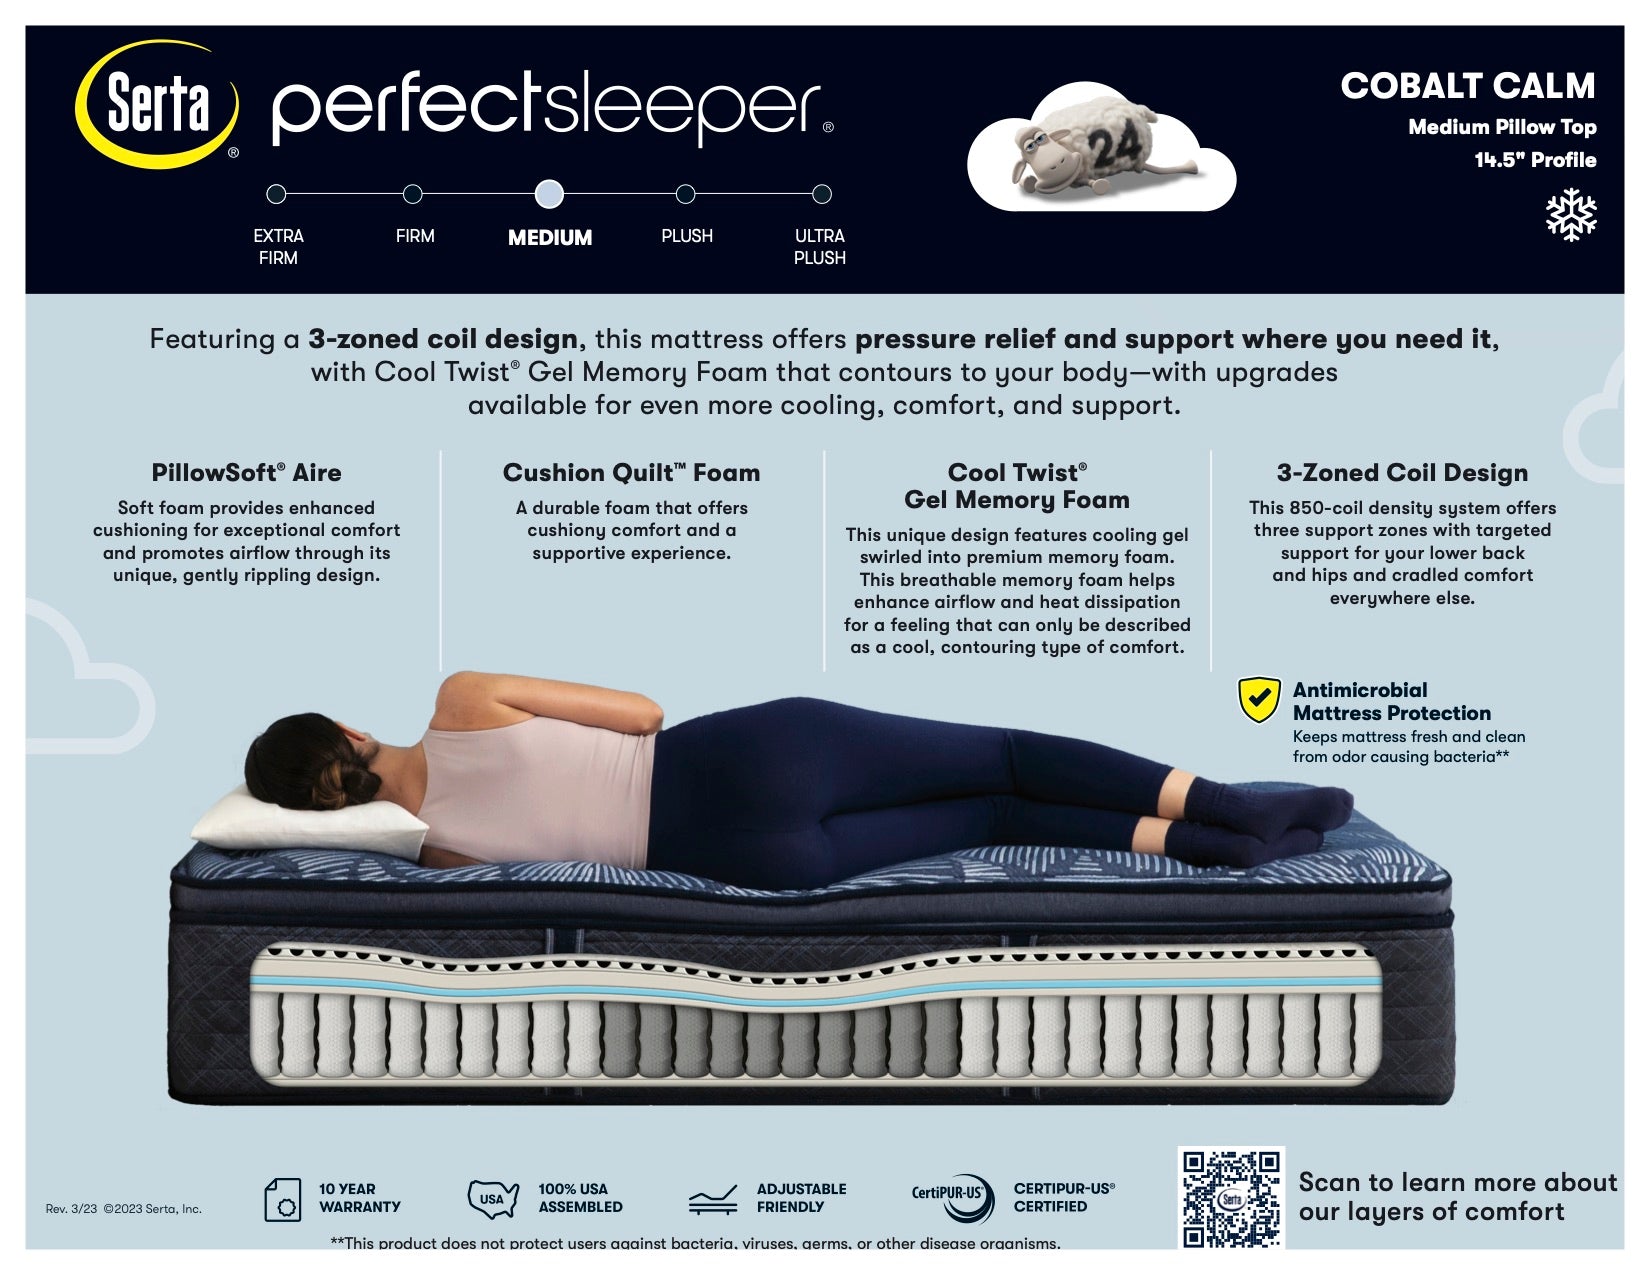 Spec Card for the Serta Perfect Sleeper Cobalt Calm Plush Pillowtop Mattress